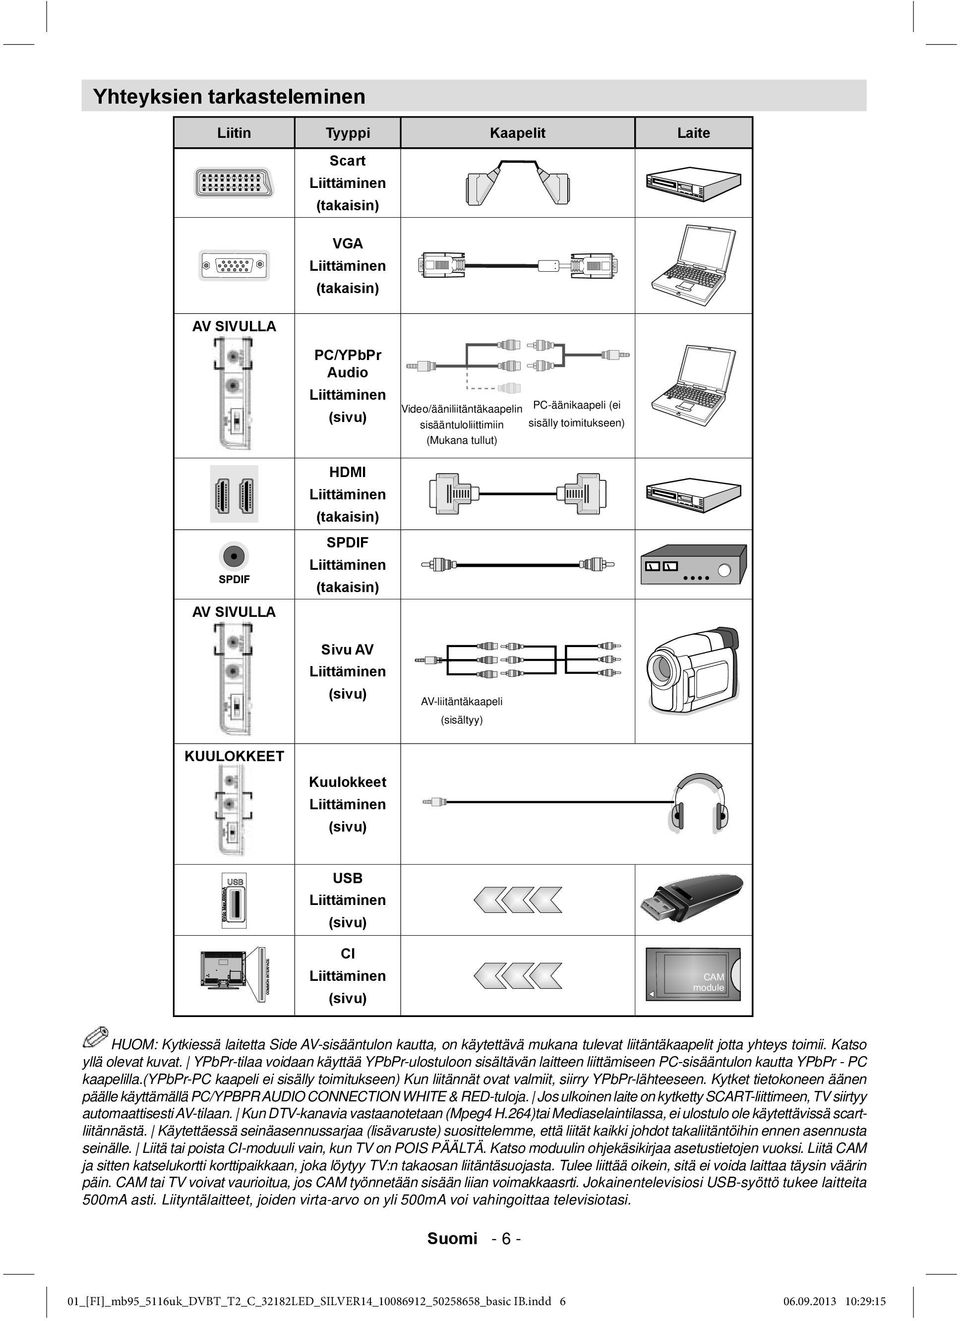 (sisältyy) KUULOKKEET Kuulokkeet Liittäminen (sivu) USB Liittäminen (sivu) CI Liittäminen (sivu) HUOM: Kytkiessä laitetta Side AV-sisääntulon kautta, on käytettävä mukana tulevat liitäntäkaapelit